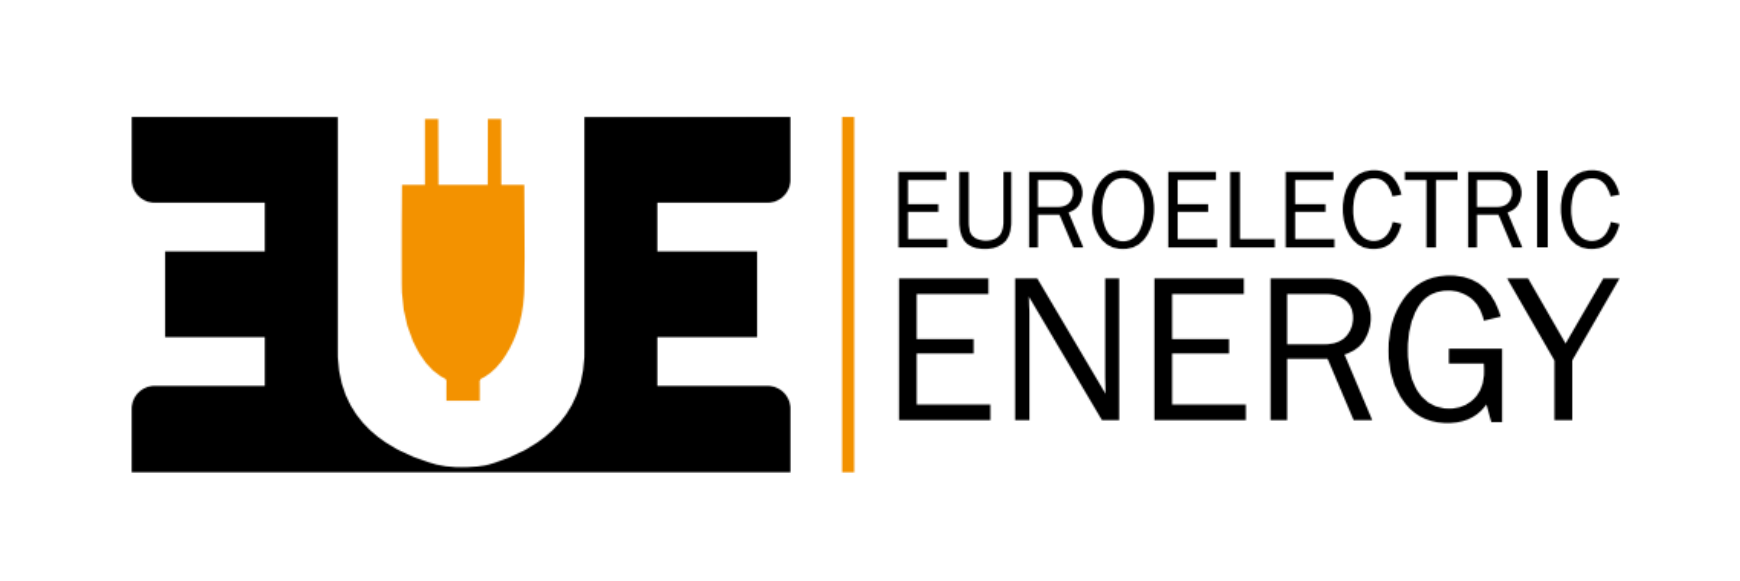 EUROELECTRIC ENERGY